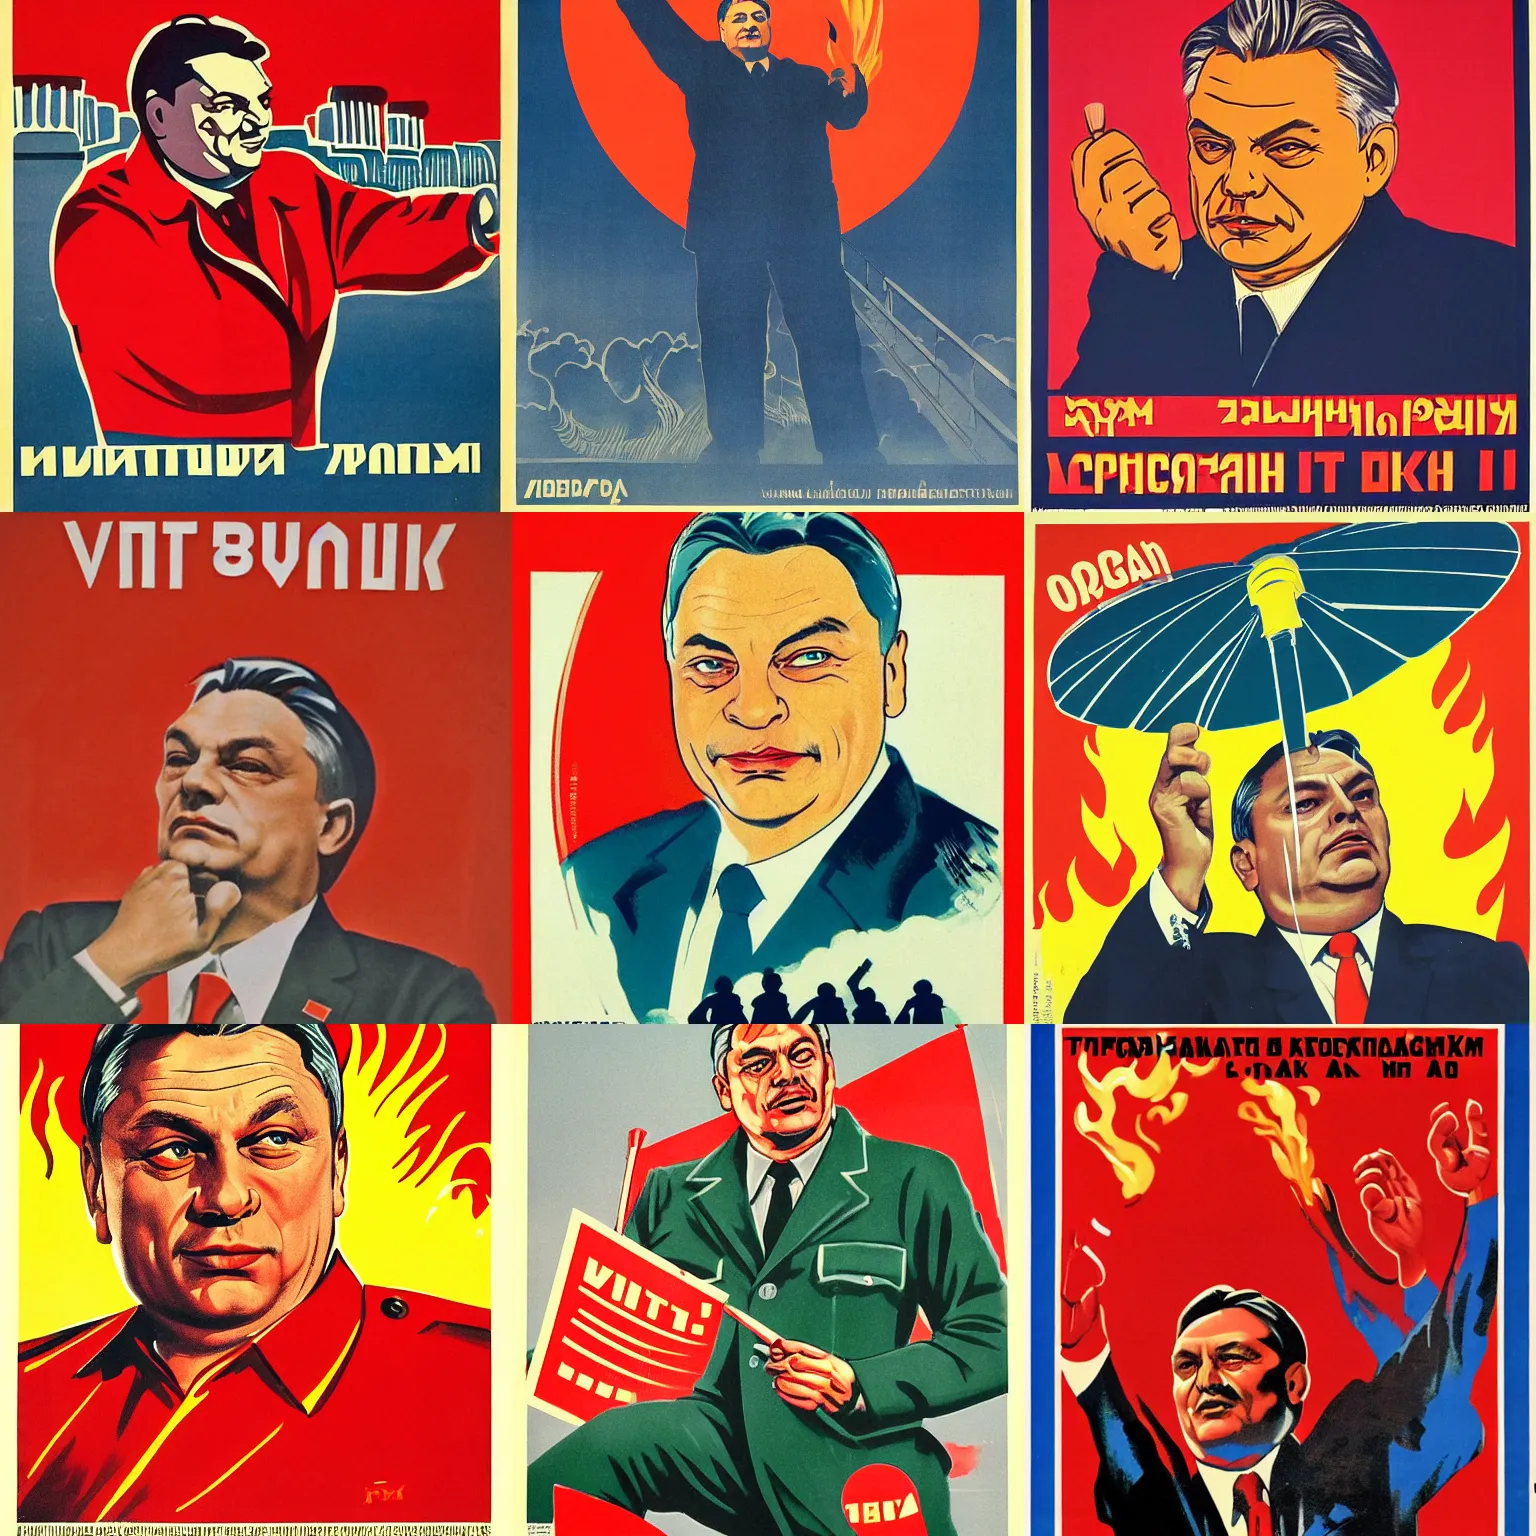 Prompt: soviet propaganda poster of viktor orban making fire